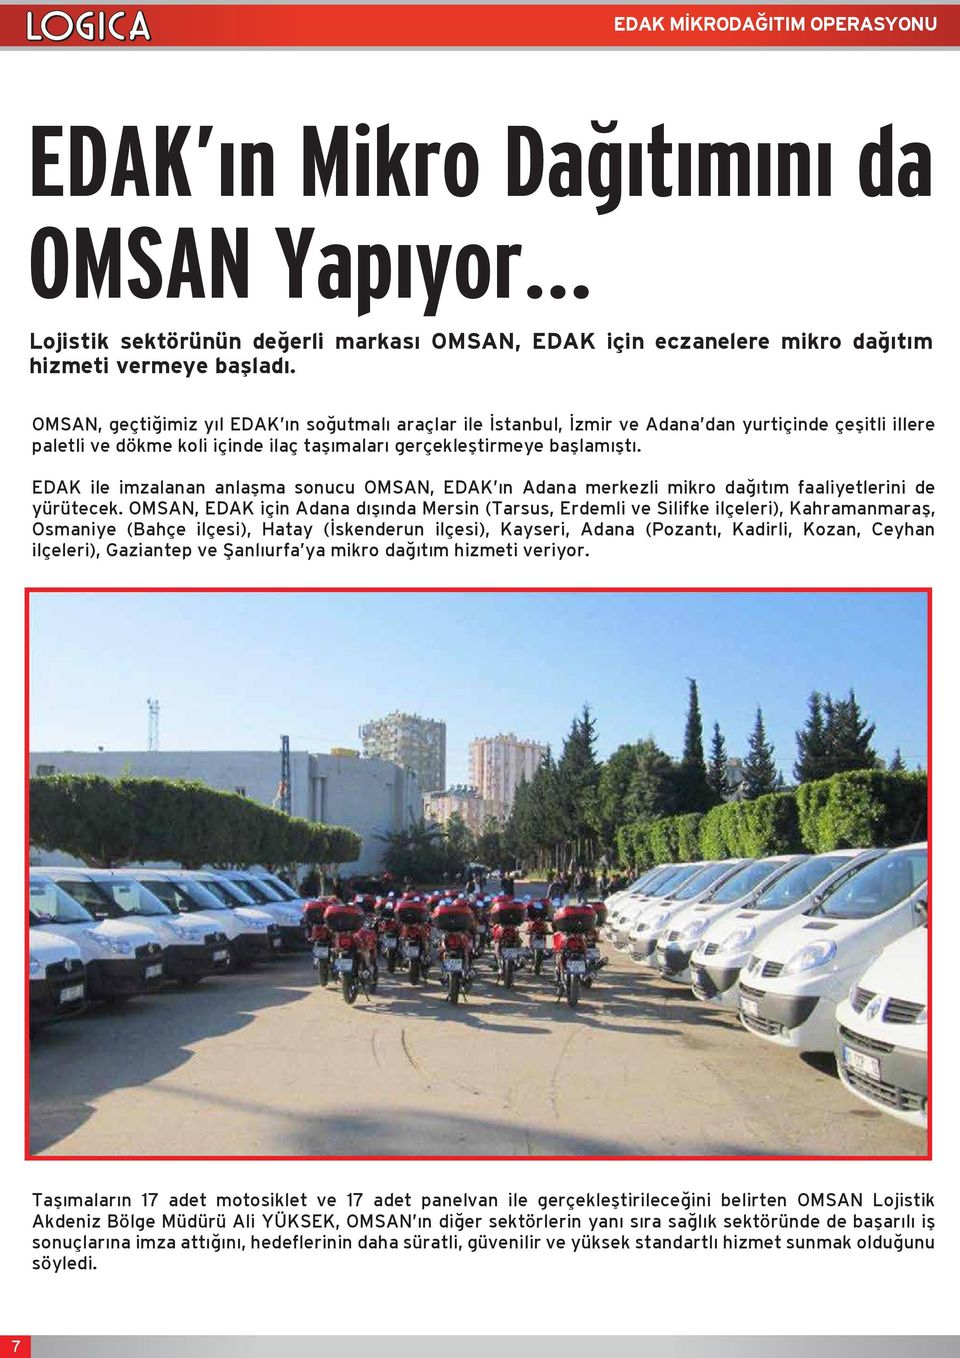 EDAK ile imzalanan anlaşma sonucu OMSAN, EDAK ın Adana merkezli mikro dağıtım faaliyetlerini de yürütecek.